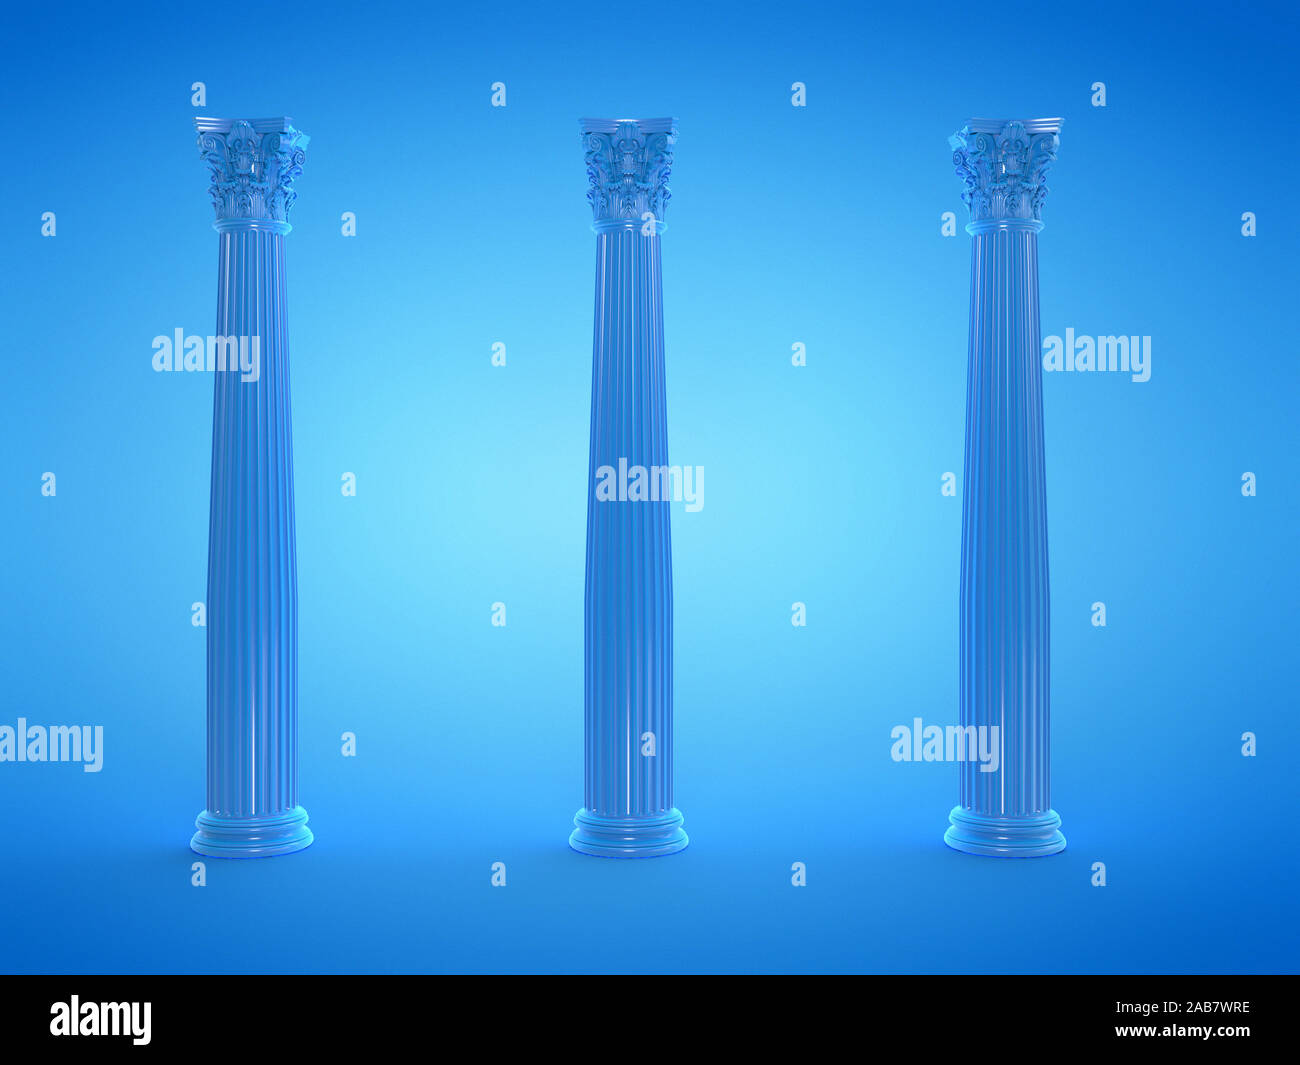 Rendu 3d illustration de colonnes bleu Banque D'Images